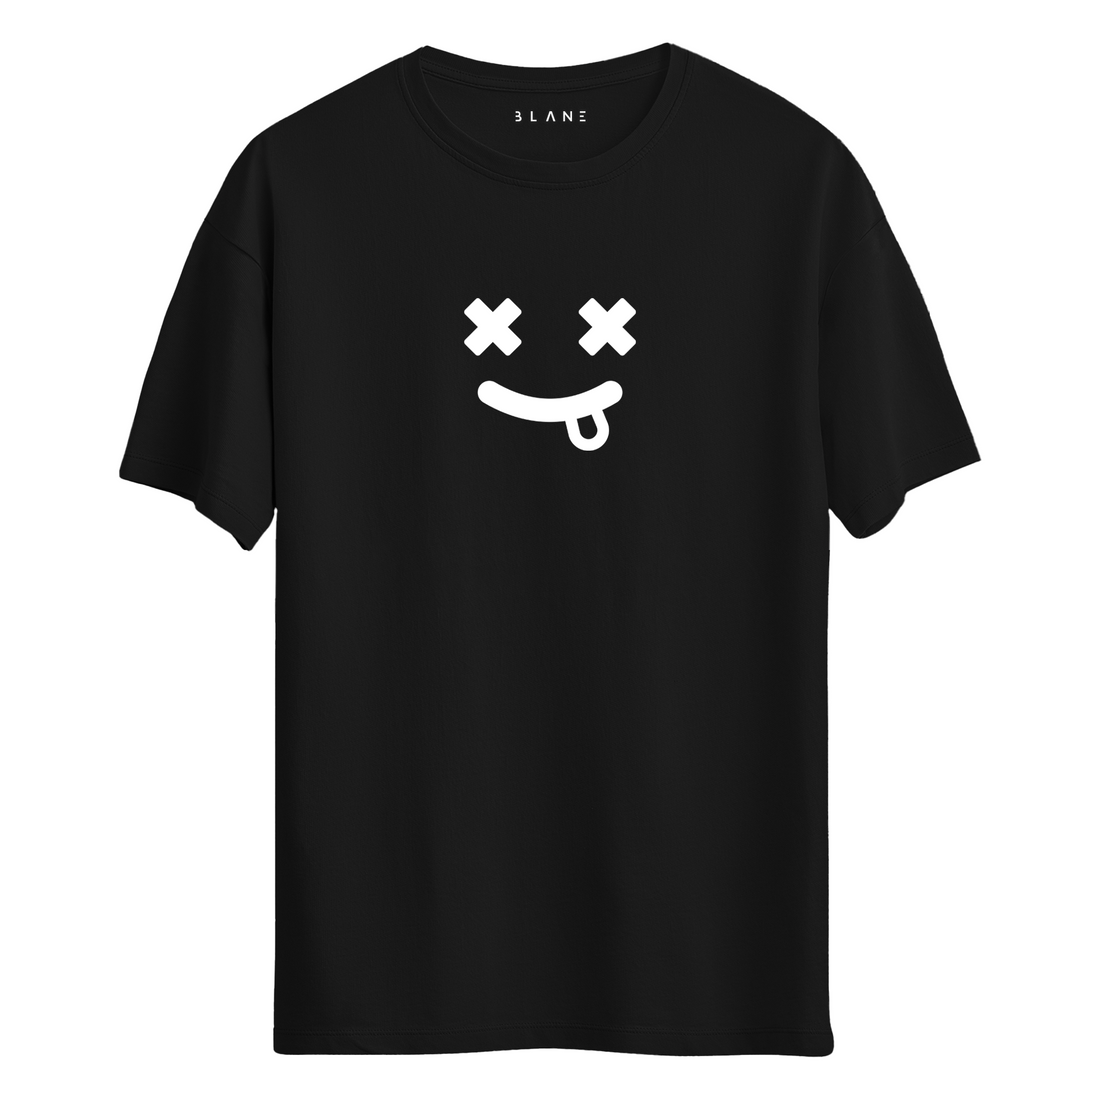 Smile Suicide - T-Shirt